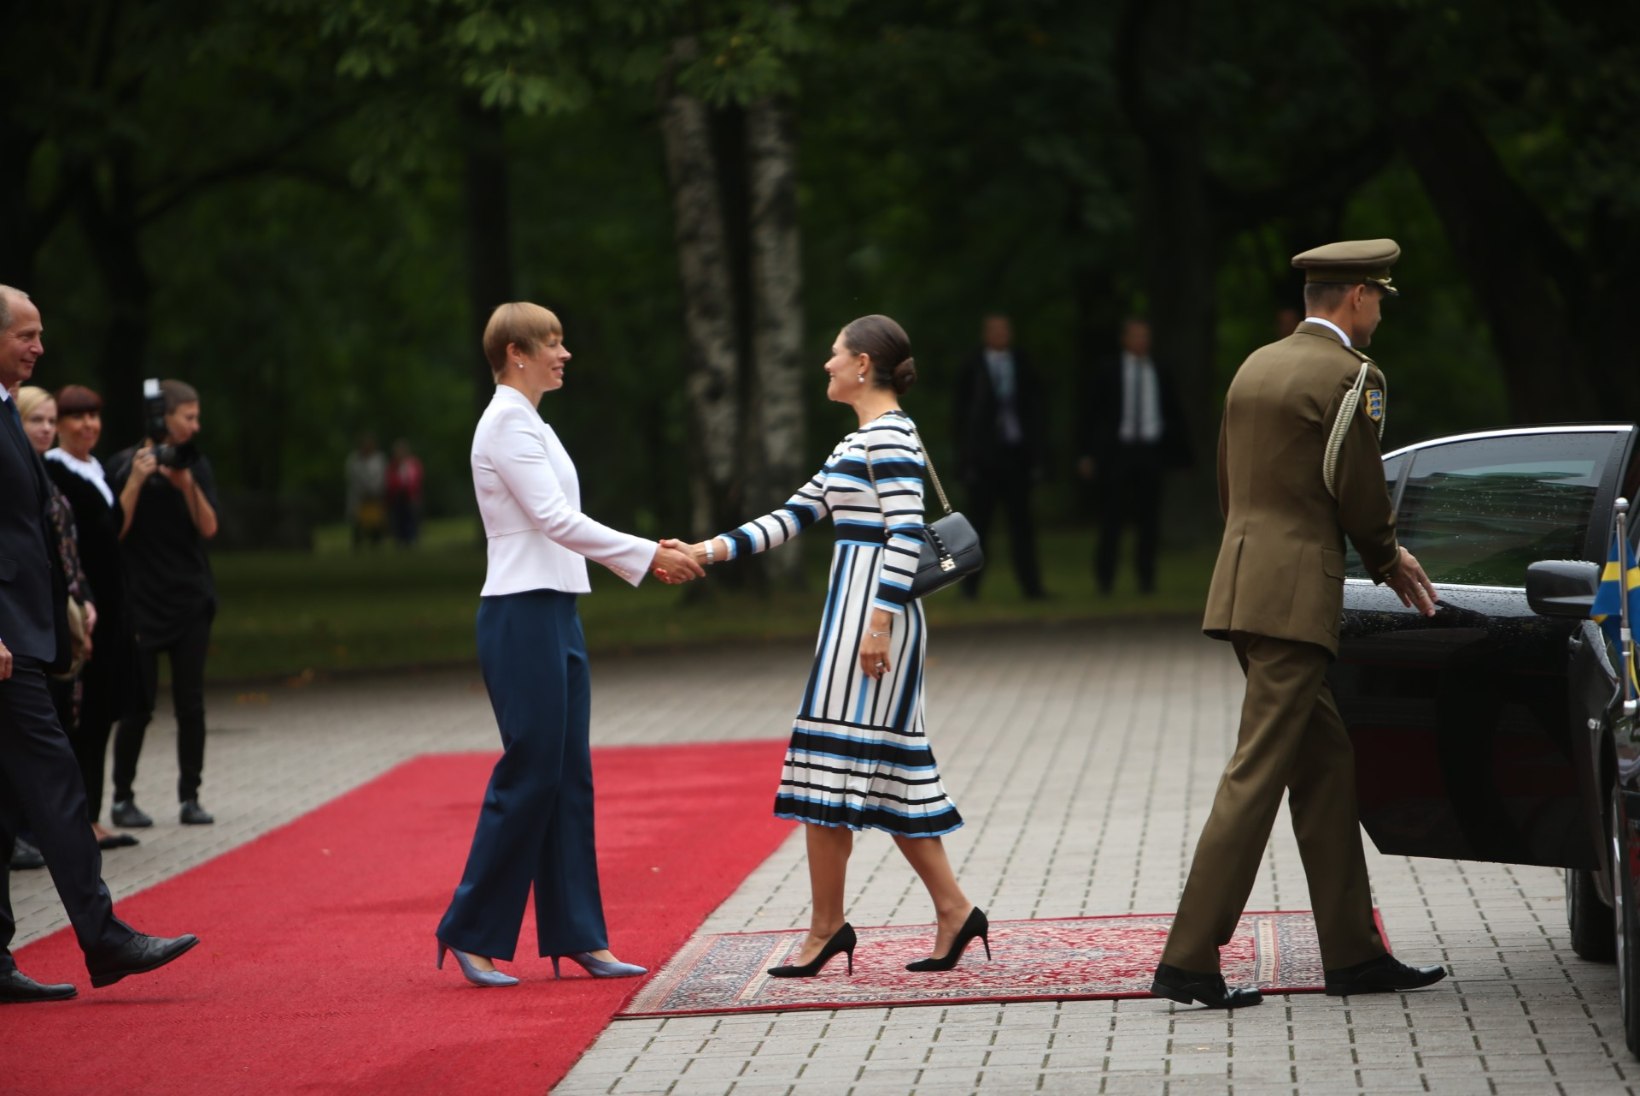 FOTOD | Kroonprintsess Victoria tervitas presidenti Eesti lipuvärvides kleidis, Kaljulaid vahetas poole kohtumise ajal riideid